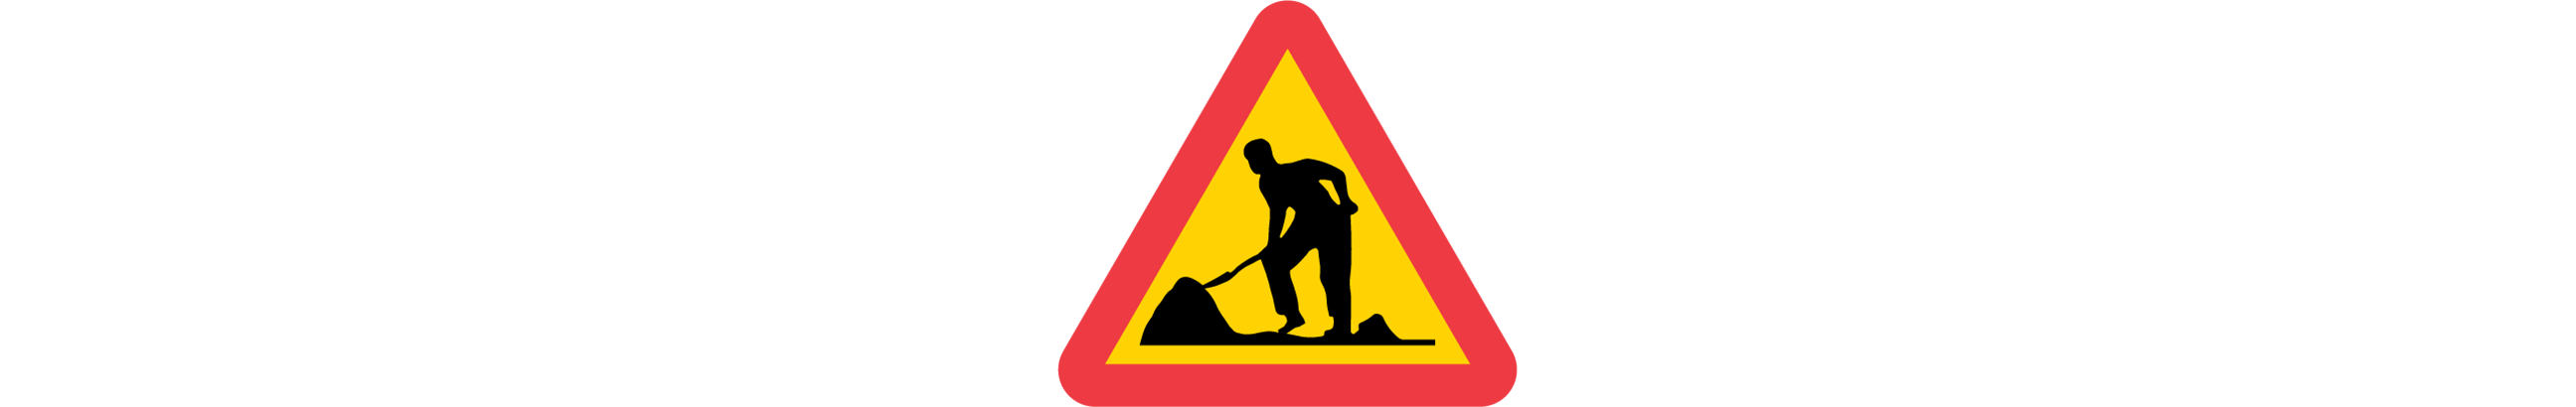 varning för vägarbete